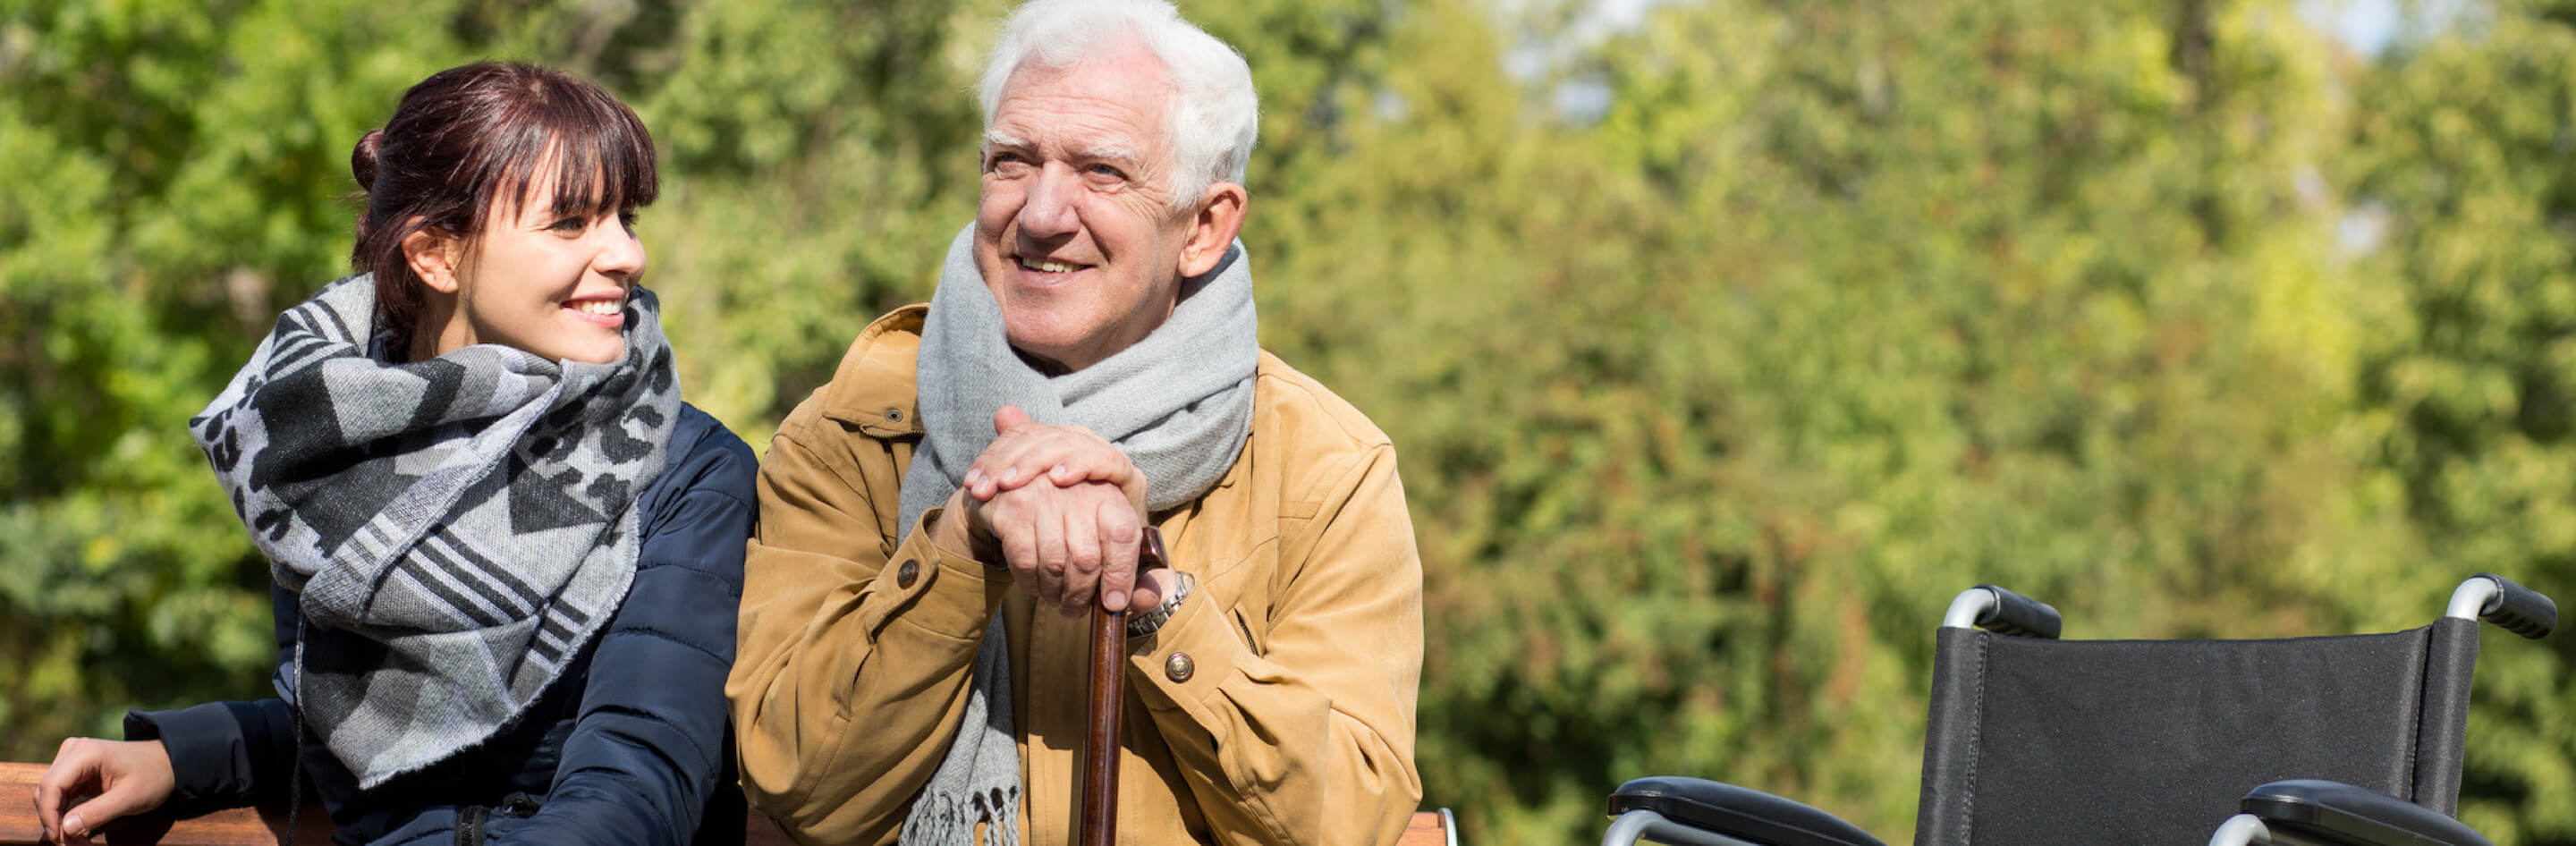 4 componentes de la calidad de vida de los adultos mayores